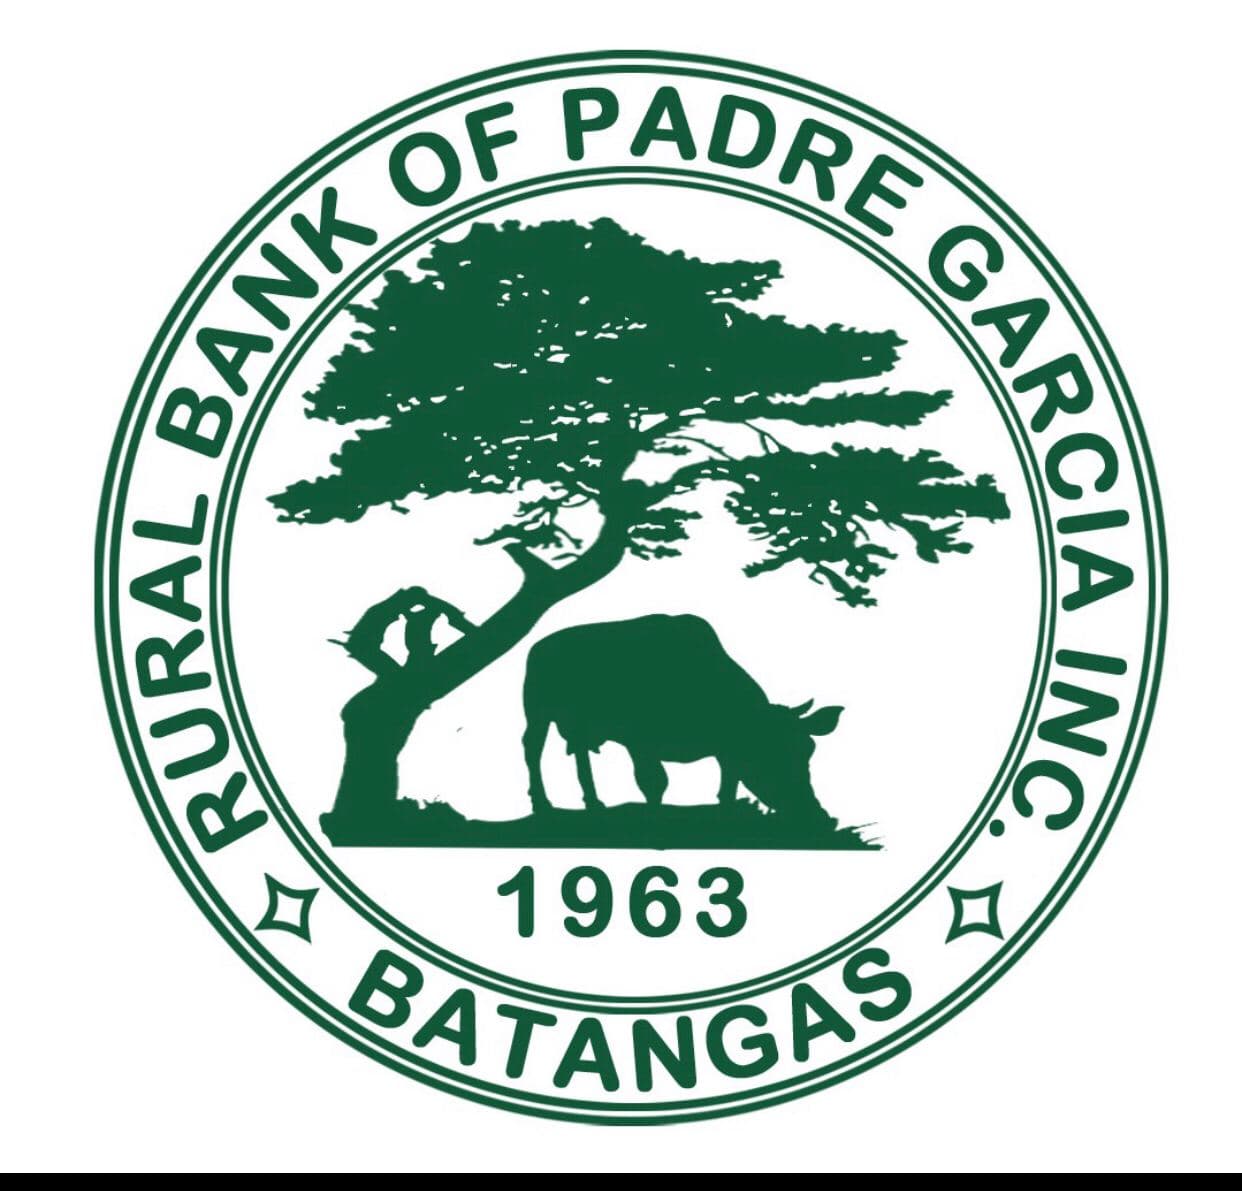 Rural Bank of Padre Garcia Inc